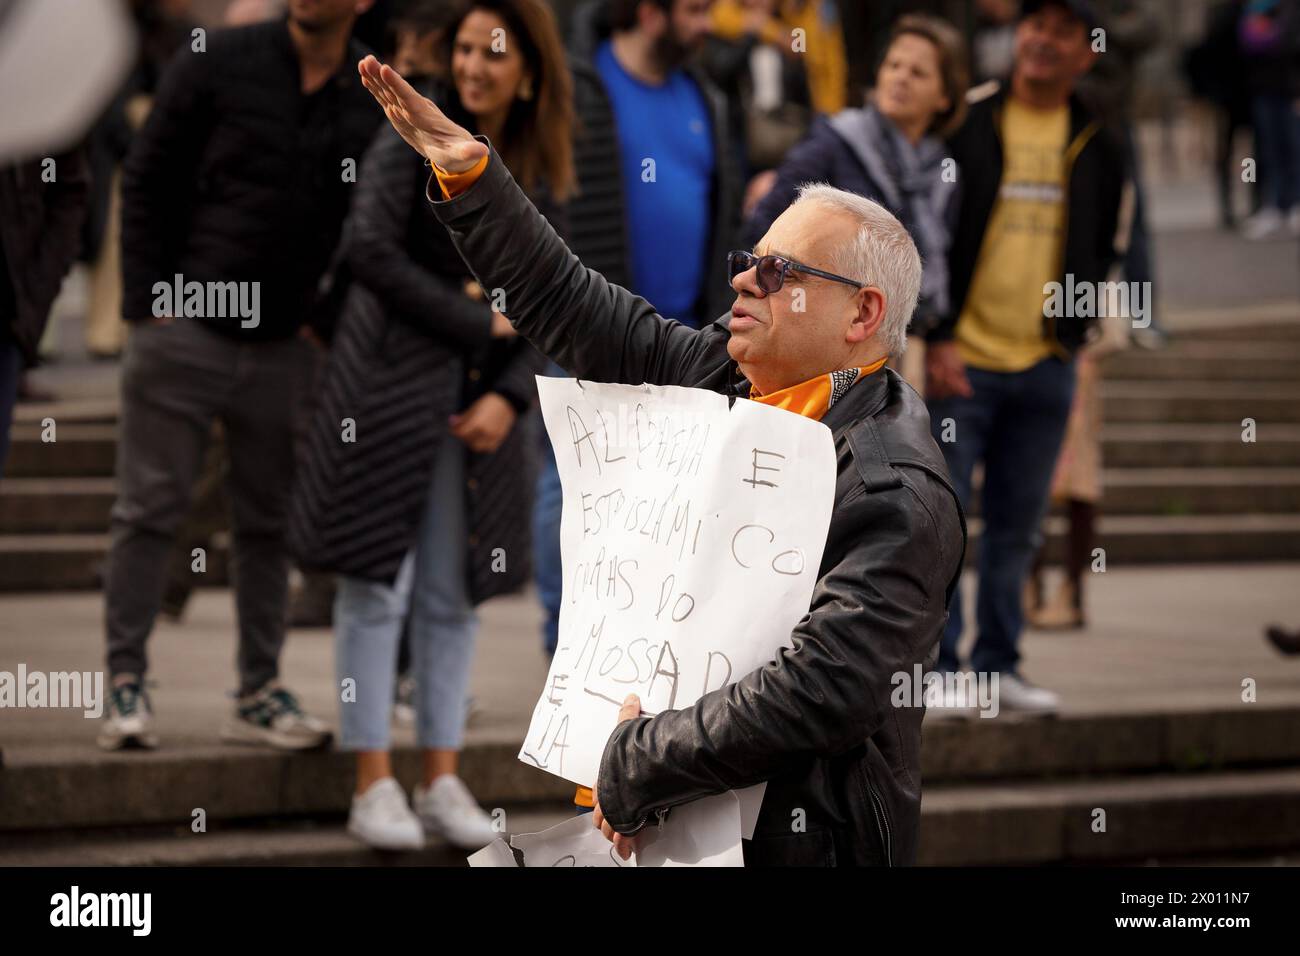 Porto, Portogallo. 6 aprile 2024. (NOTA PER I REDATTORI: L'immagine contiene profanità) un manifestante anti-immigrazione tiene un cartello durante la dimostrazione. Proteste antifasciste e anti-immigrazione hanno avuto luogo a Porto, all'incirca nello stesso momento e luogo. Credito: SOPA Images Limited/Alamy Live News Foto Stock